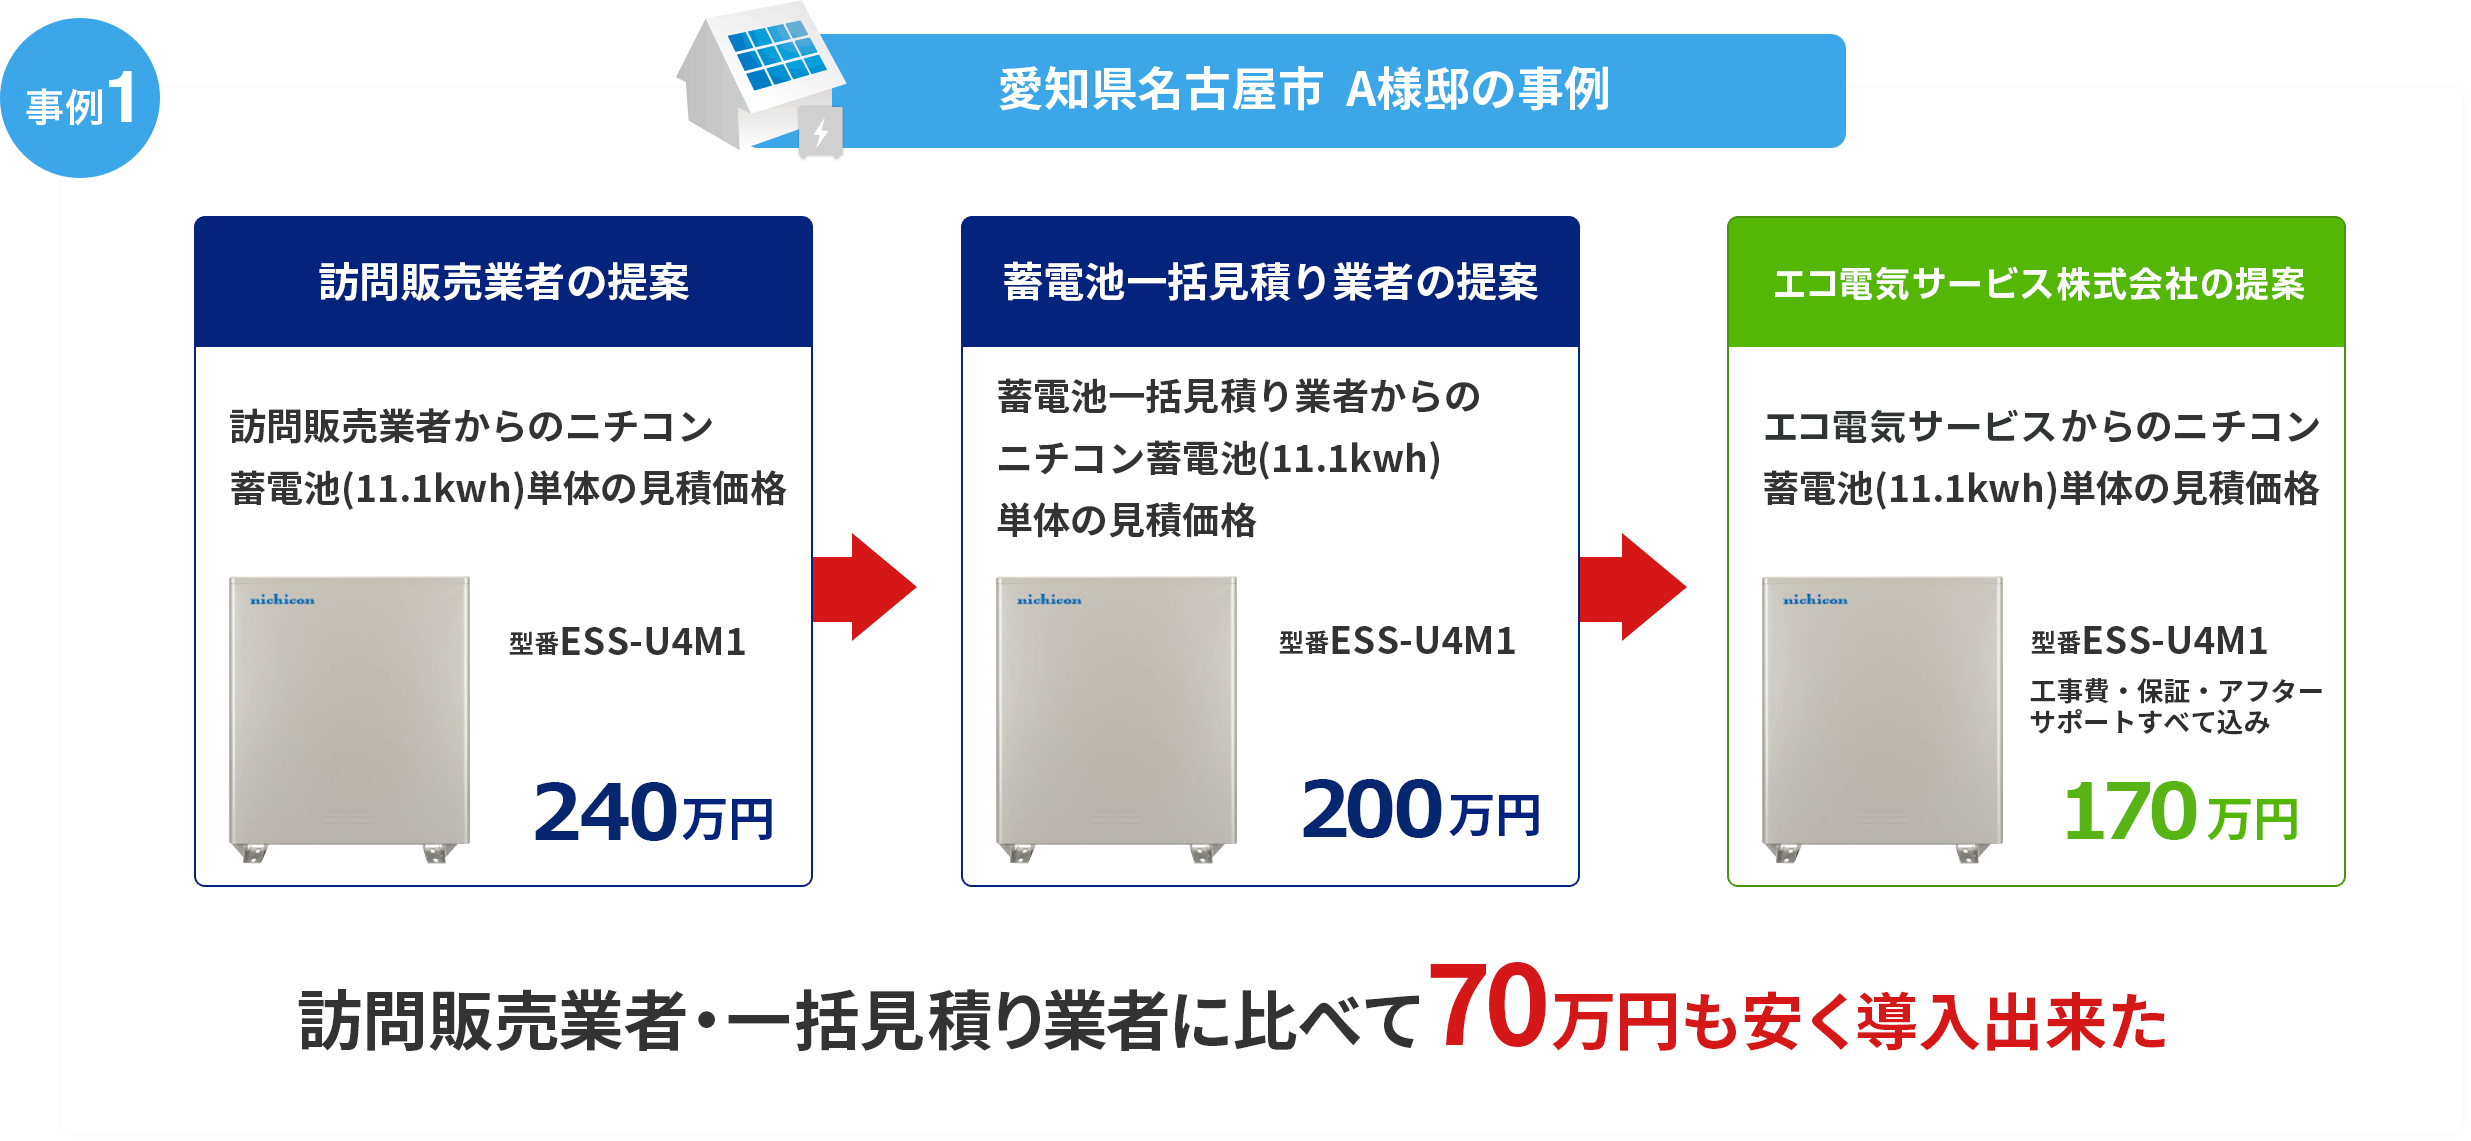 全く同じ蓄電池が70万円以上安くなった事例